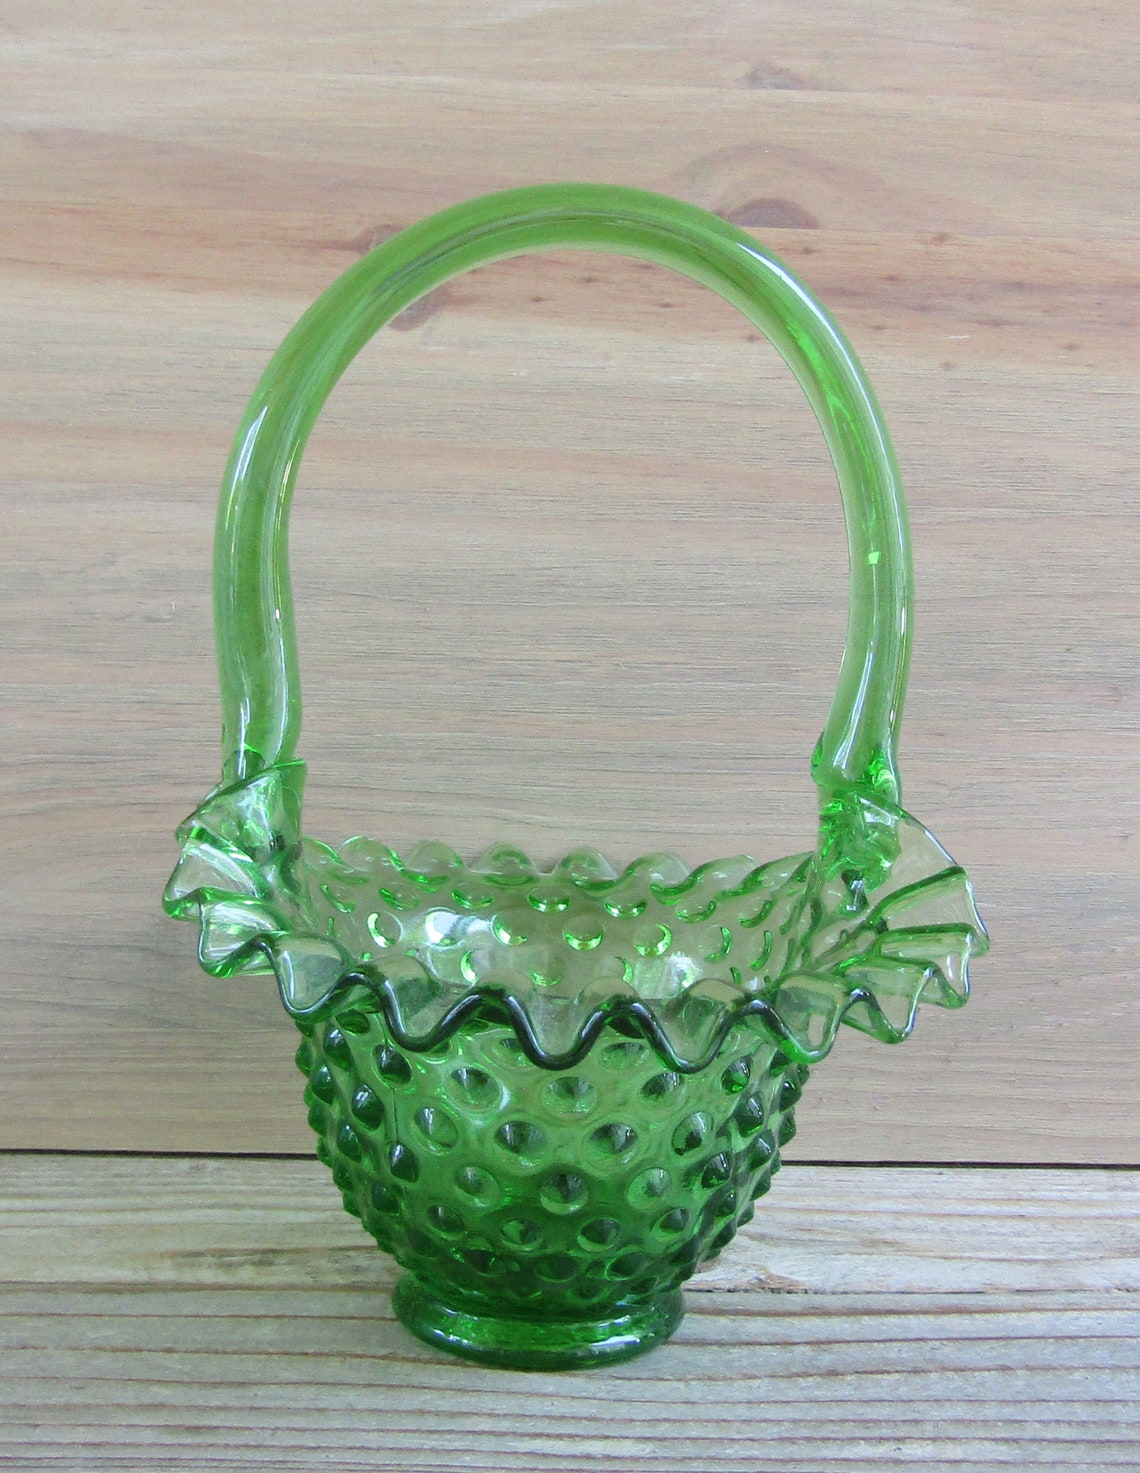 Fenton Glass Green Hobnail Basket Etsy